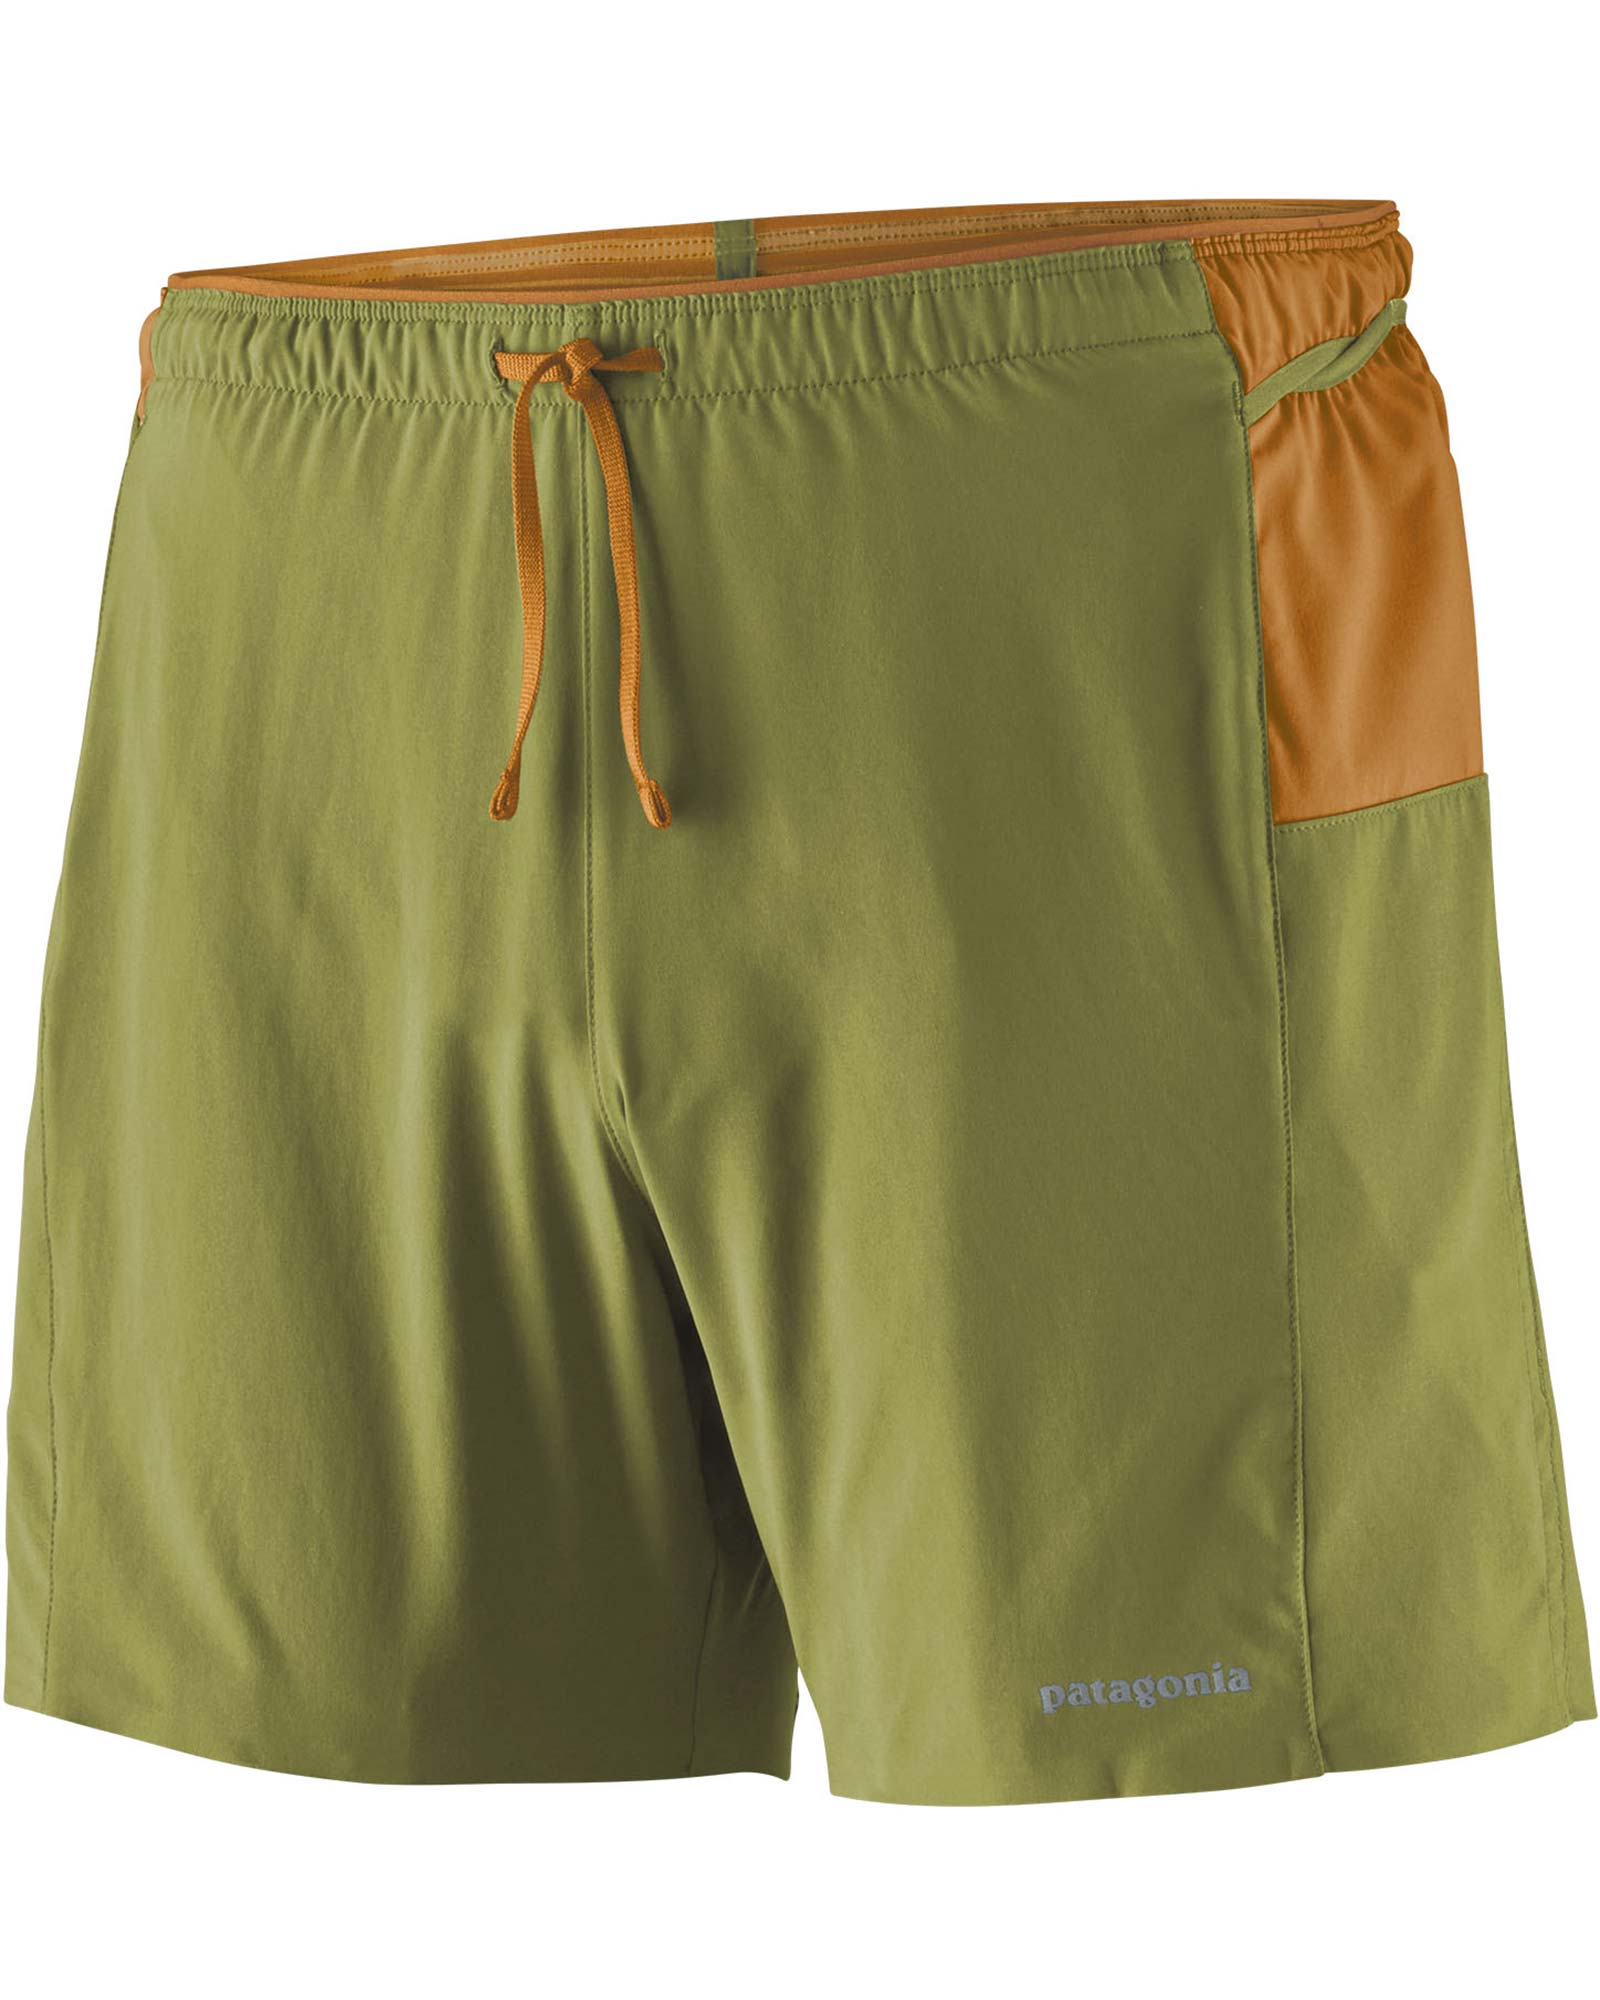 Patagonia Men's Strider Pro 5" Shorts